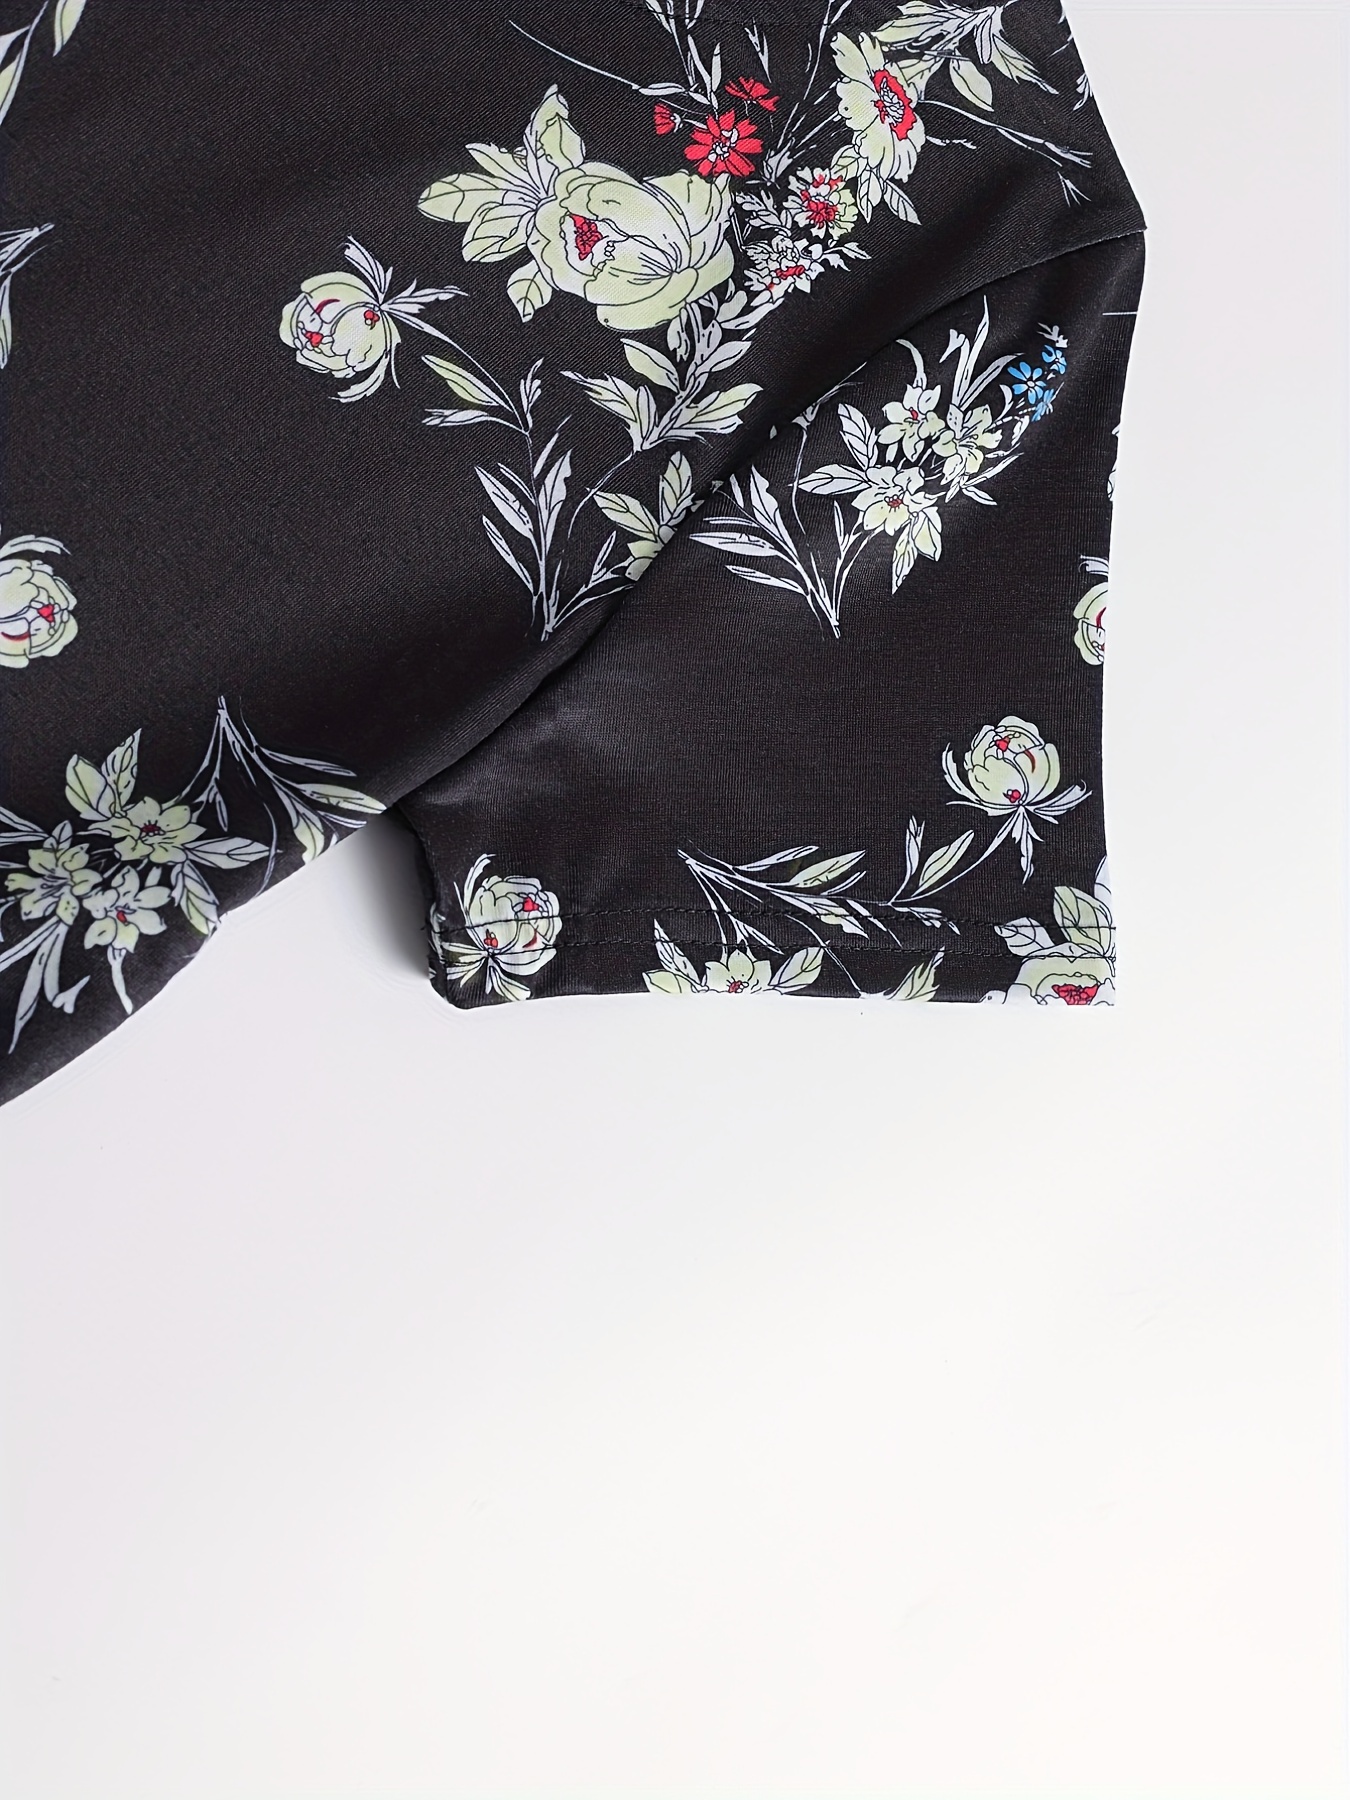 Floral Printed Silk Georgette - Black / White  Floral prints, Black and  white fabric, Silk printing